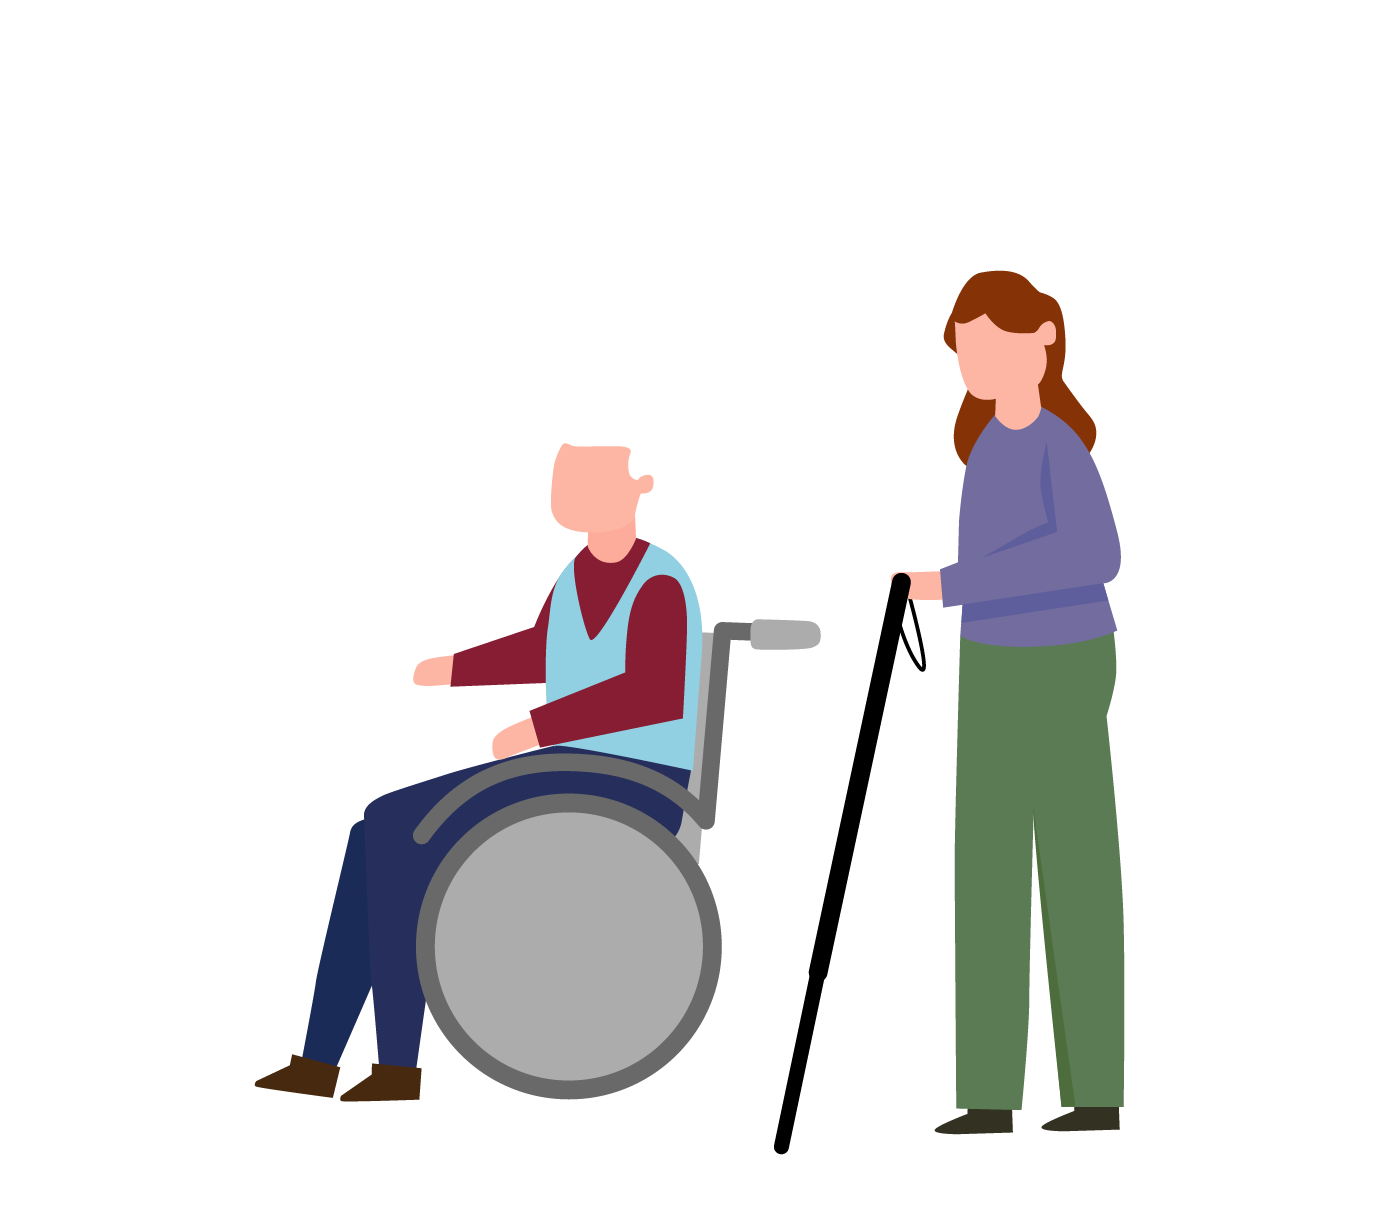 Abbildung eines Manns im Rollstuhl und einer blinden Person, um den Hinweis der barrierefreien Zugänge unsere Polizeidienststellen zu verdeutlichen.